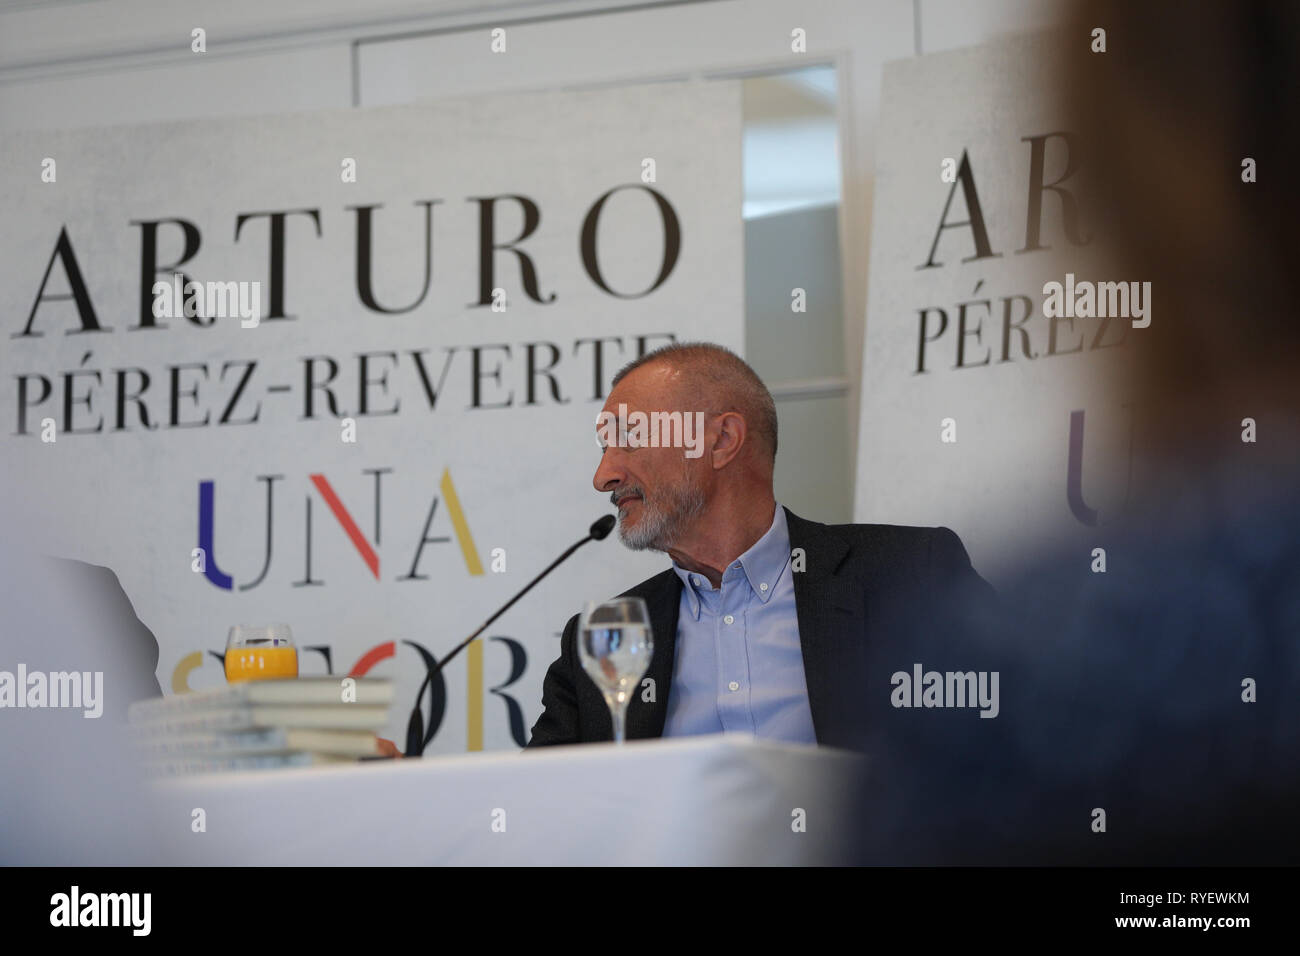 Arturo Pérez Reverte gesehen, wie seine Geschichte Buch während einer Pressekonferenz präsentiert. Vier Jahre der Episode Lieferungen unter dem Titel "Estante de Corso" haben Arturo Pérez Reverte mit dem Material für "eine Geschichte von Spanien", die Zusammenstellung seiner sind Lesungen, Erfahrung und Vernunft" über die Erinnerung an das Land, 'von den Anfängen bis zum Ende des Übergangs''. Stockfoto